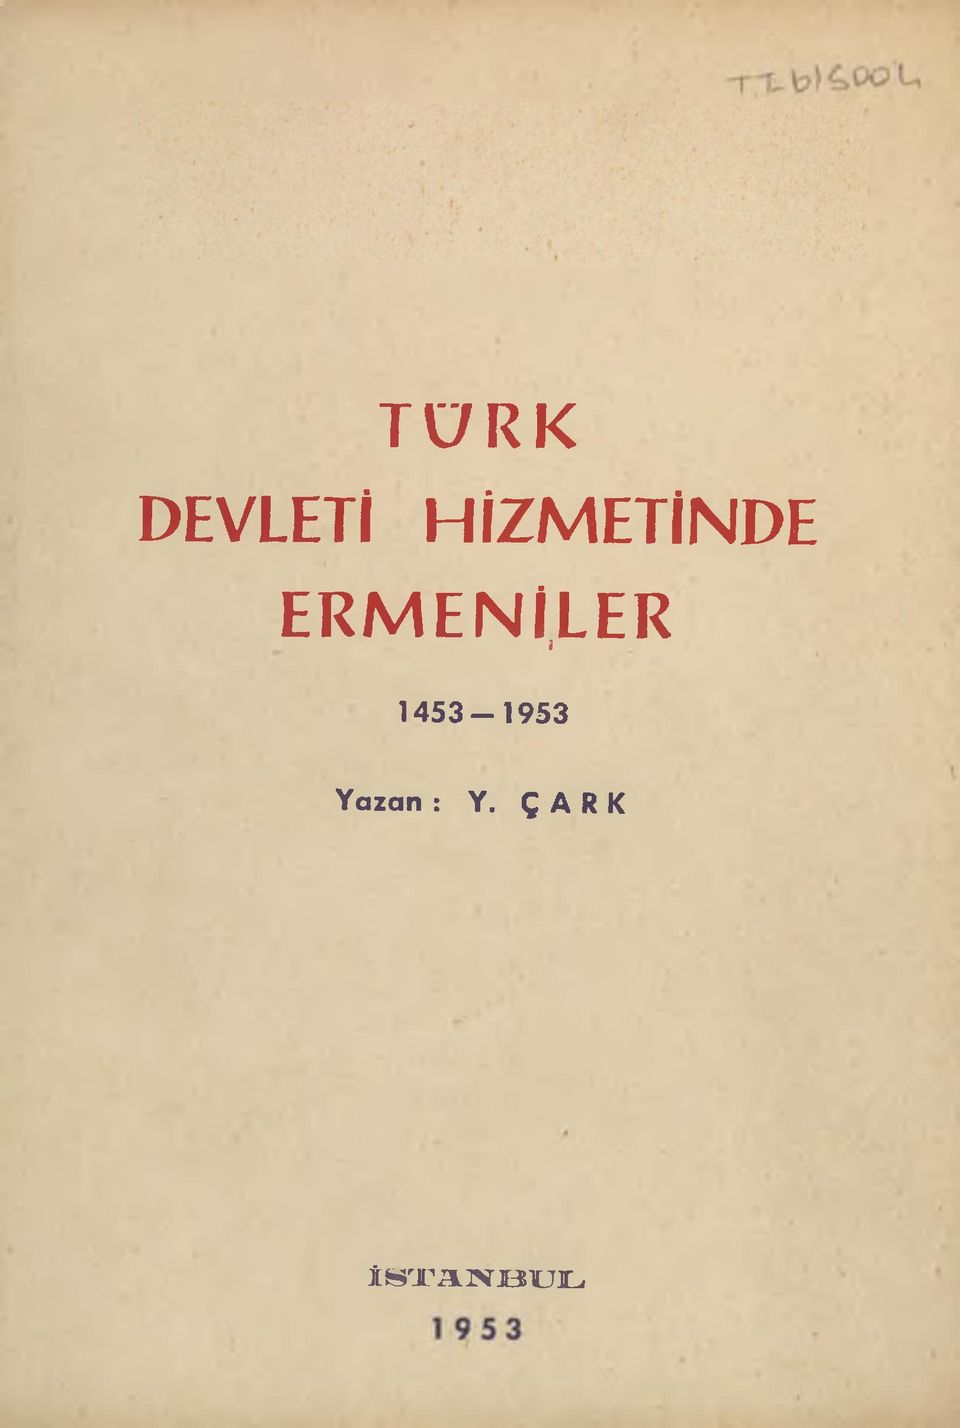 ENİLER * 1453-1953